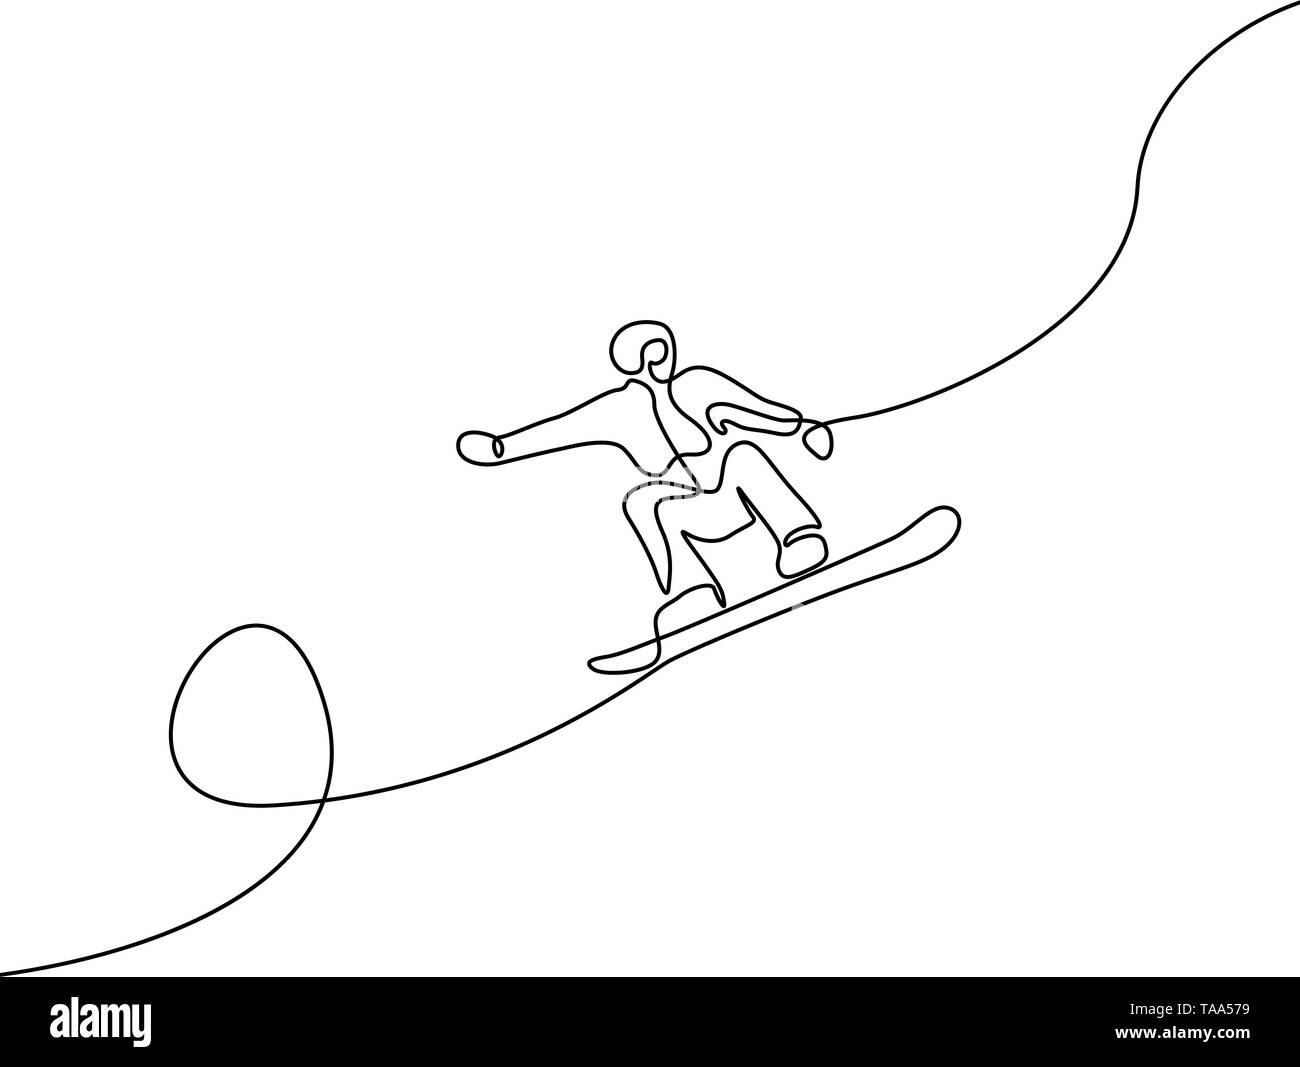 Kontinuierliche eine Strichzeichnung Snowboarder springen Vektor Stock Vektor